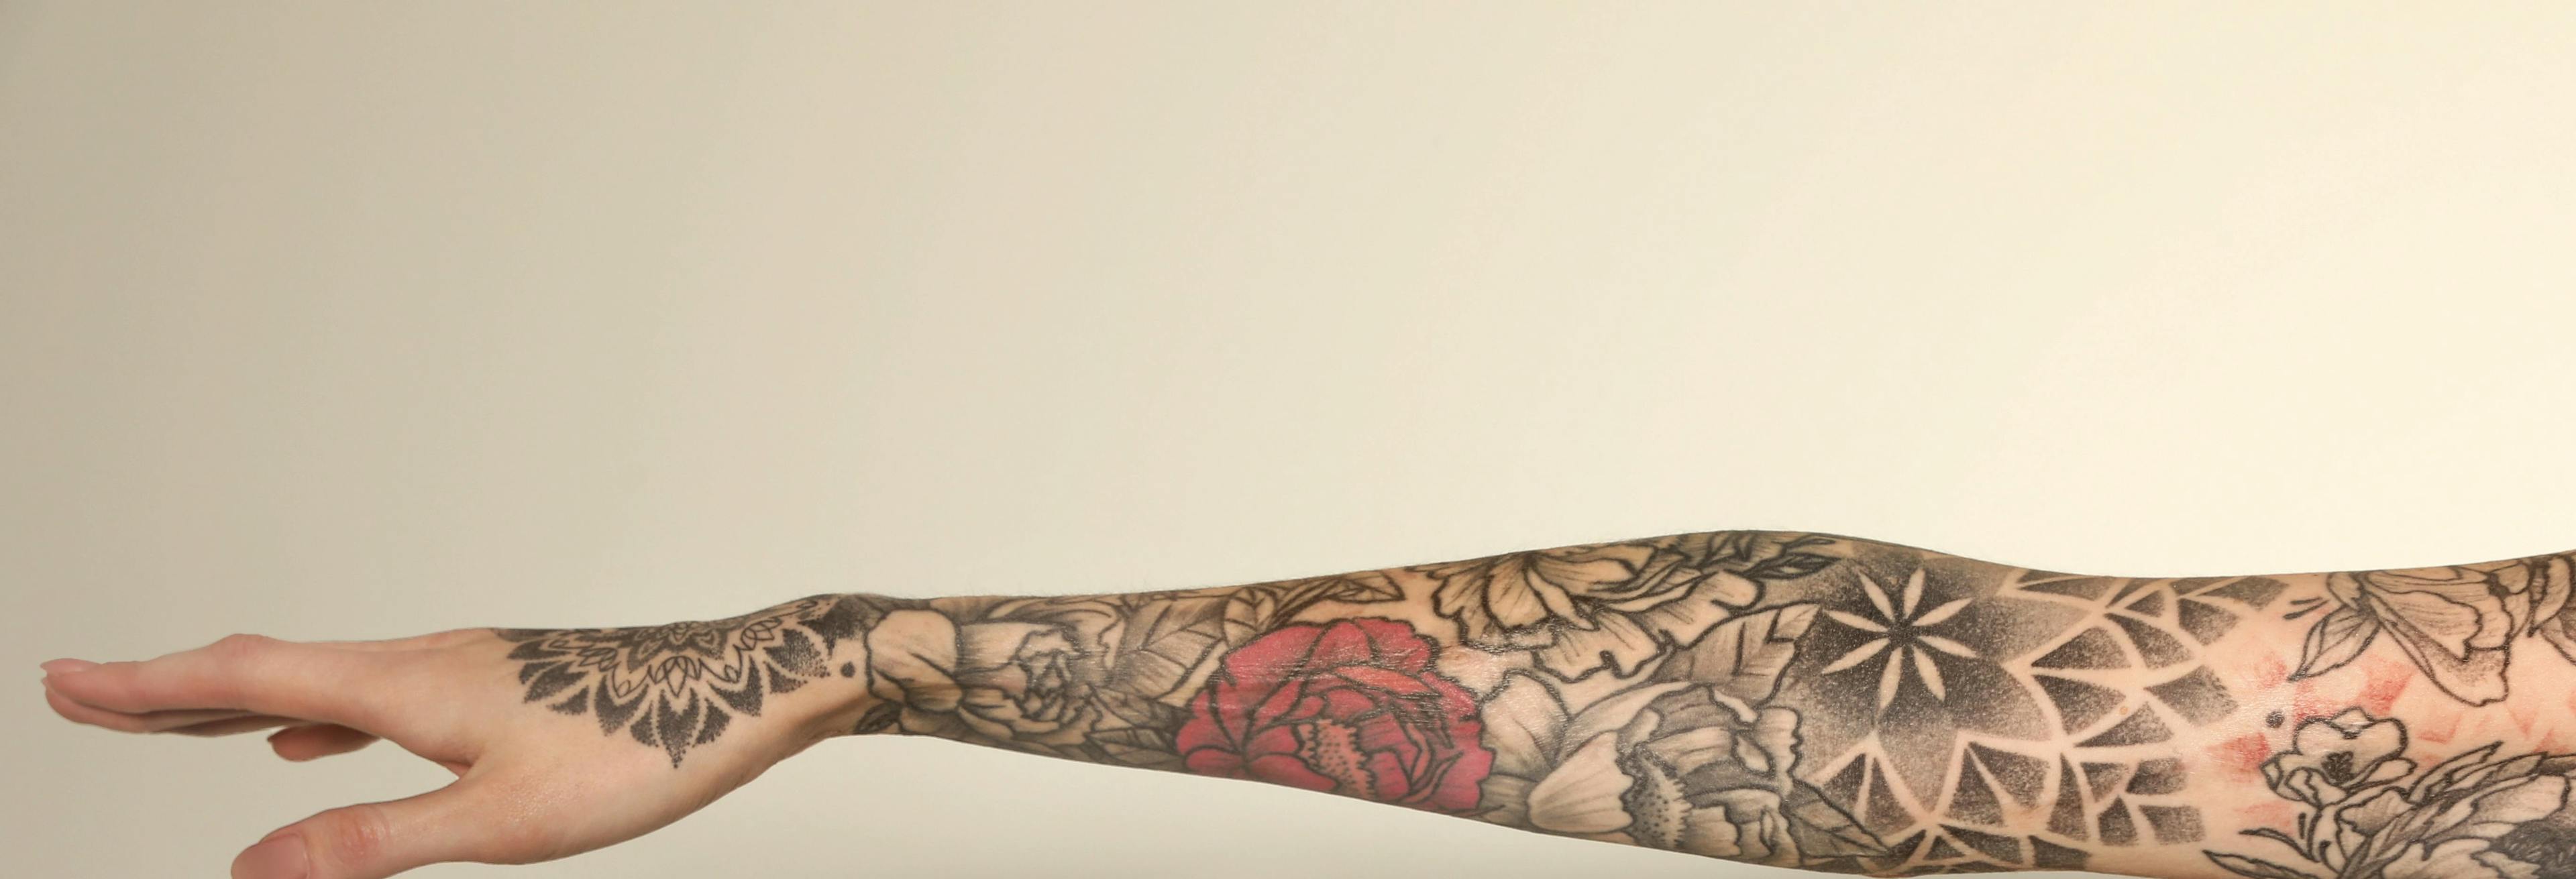 Reizender Körperschmuck – Analytik von Tattoos